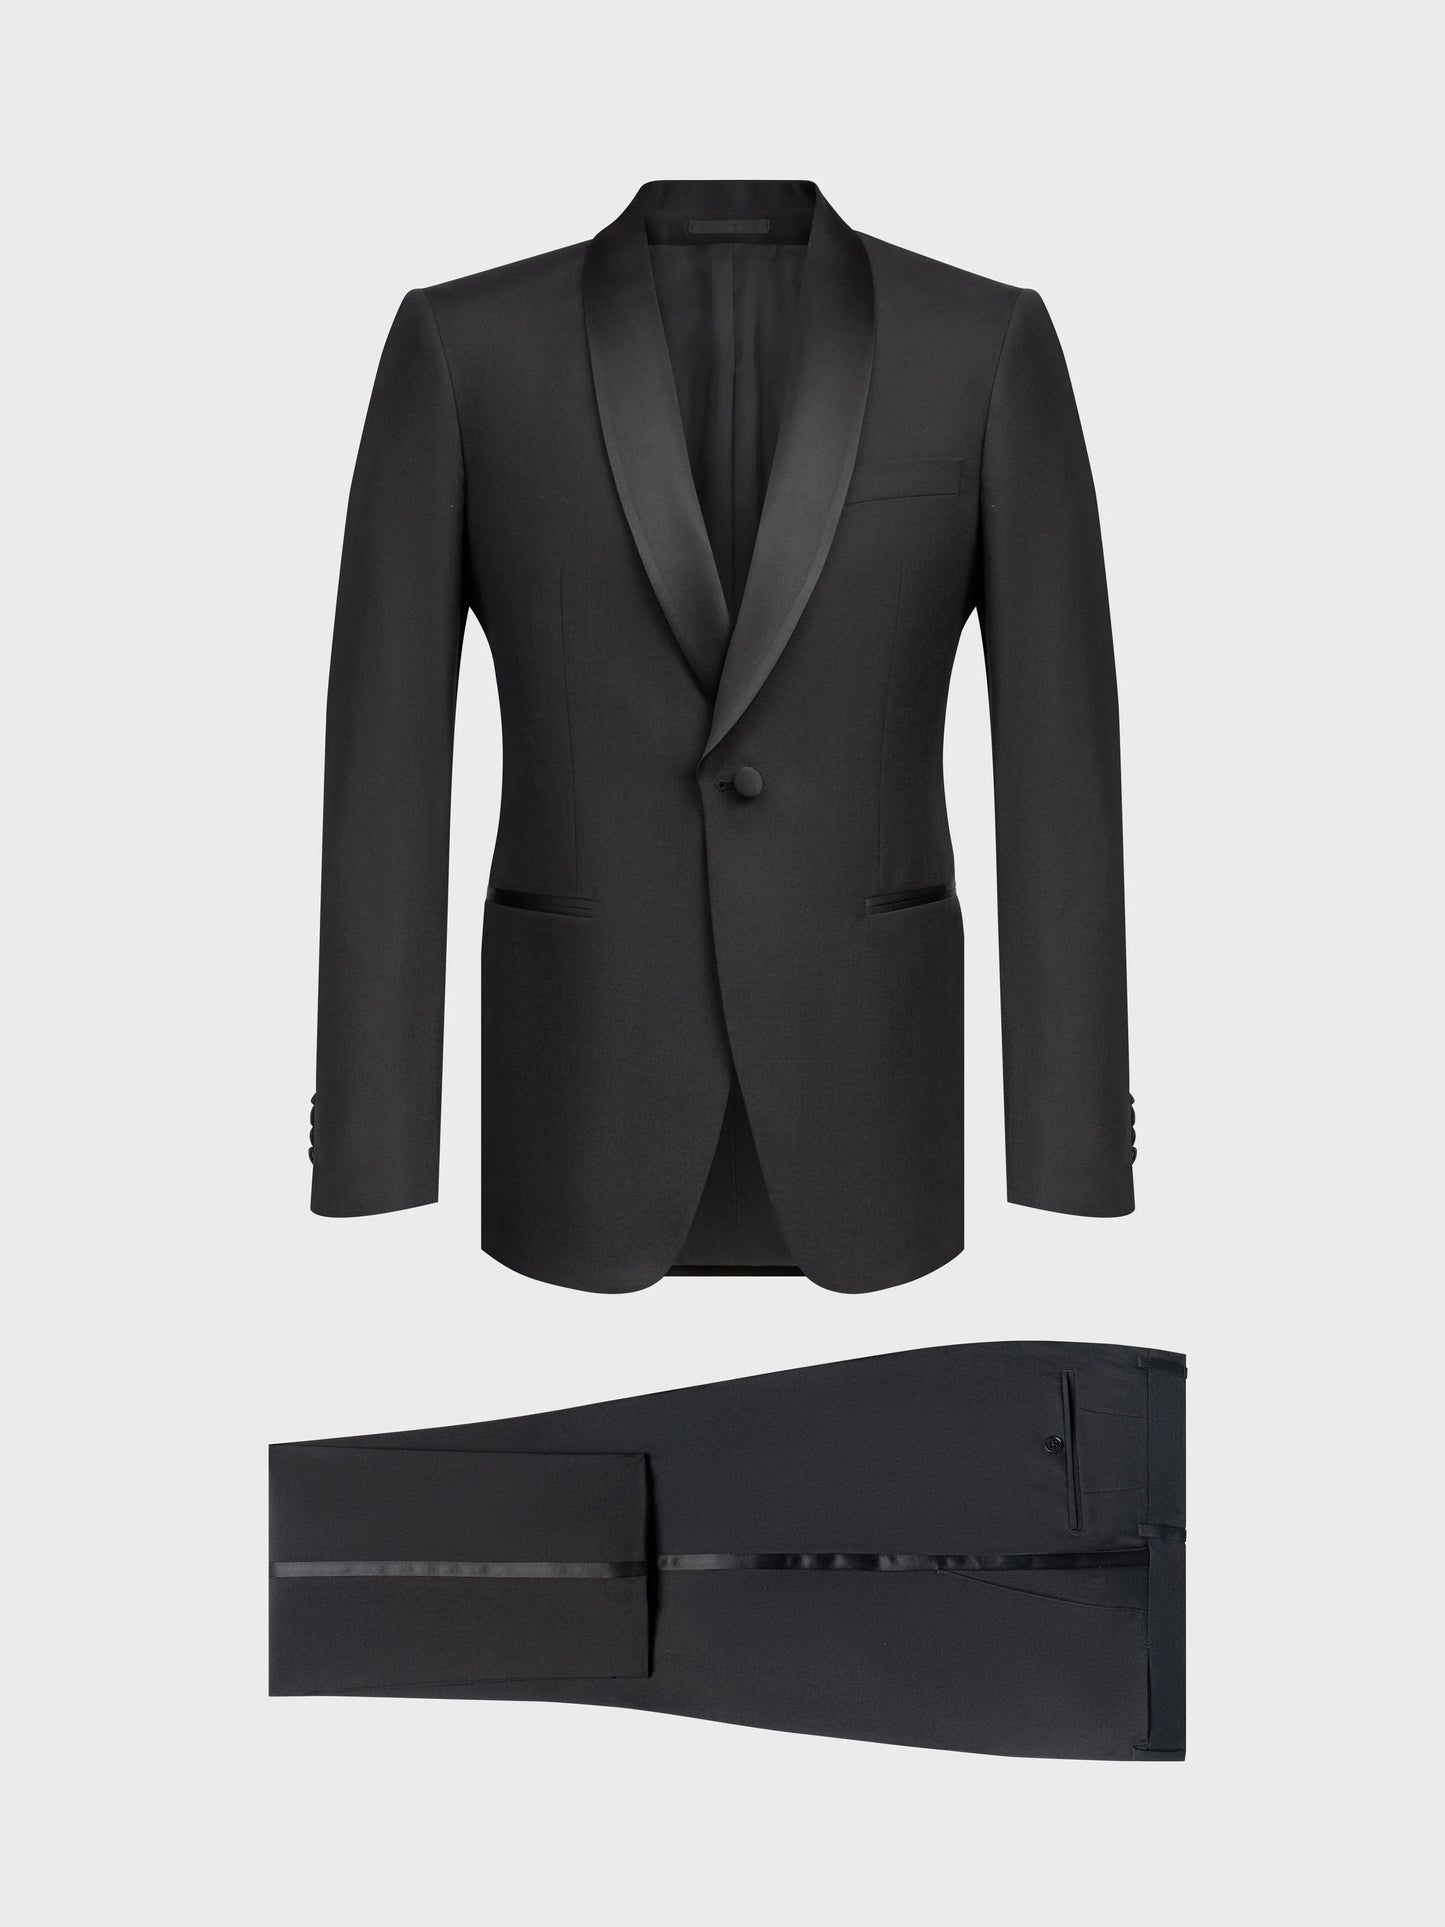 SFC150 Coimbra Suit